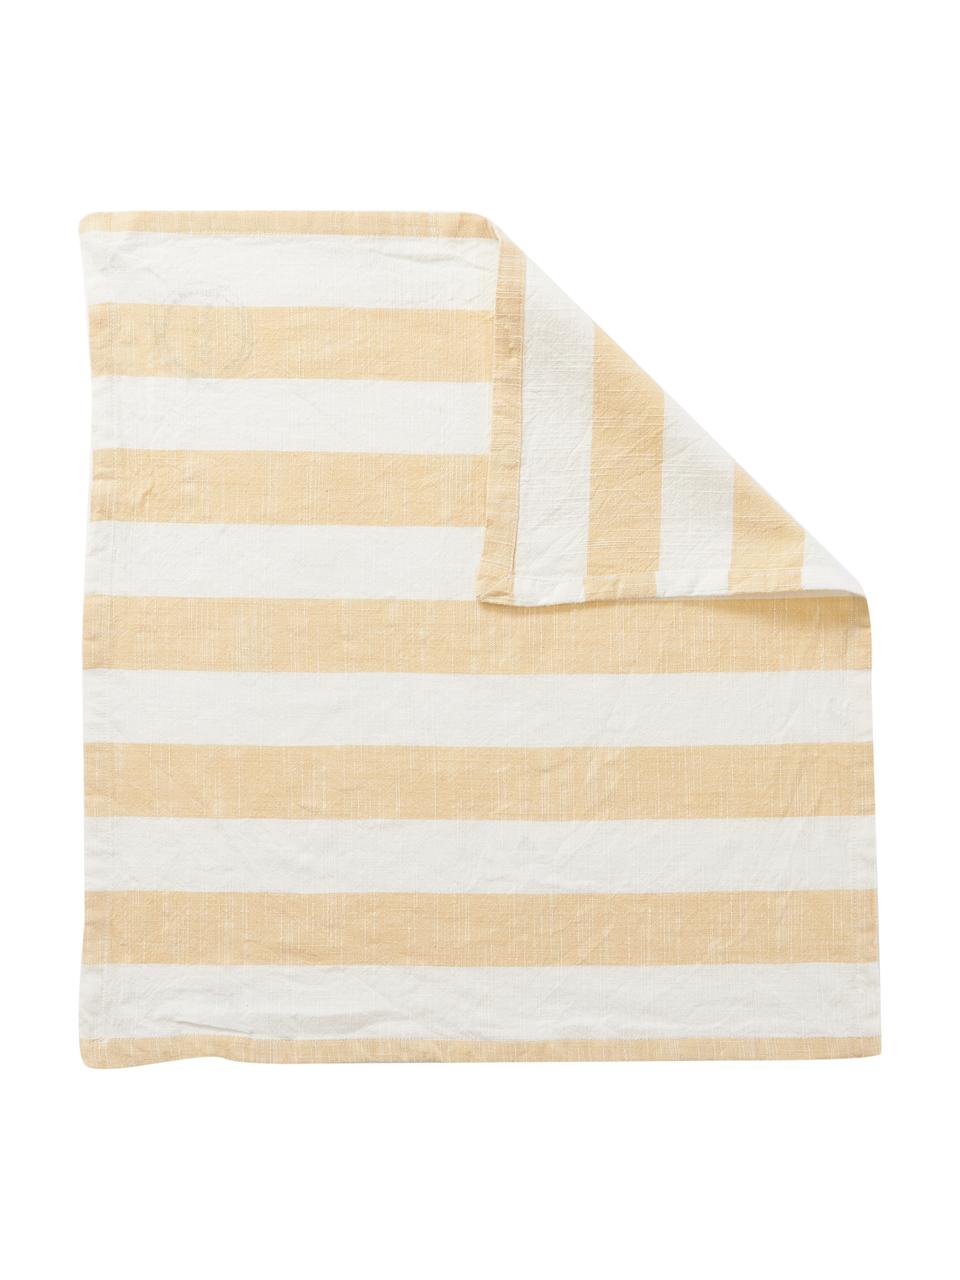 Stoffservietten Strip, 2 Stück, 100 % Baumwolle, Gelb, Weiß, B 45 x L 45 cm